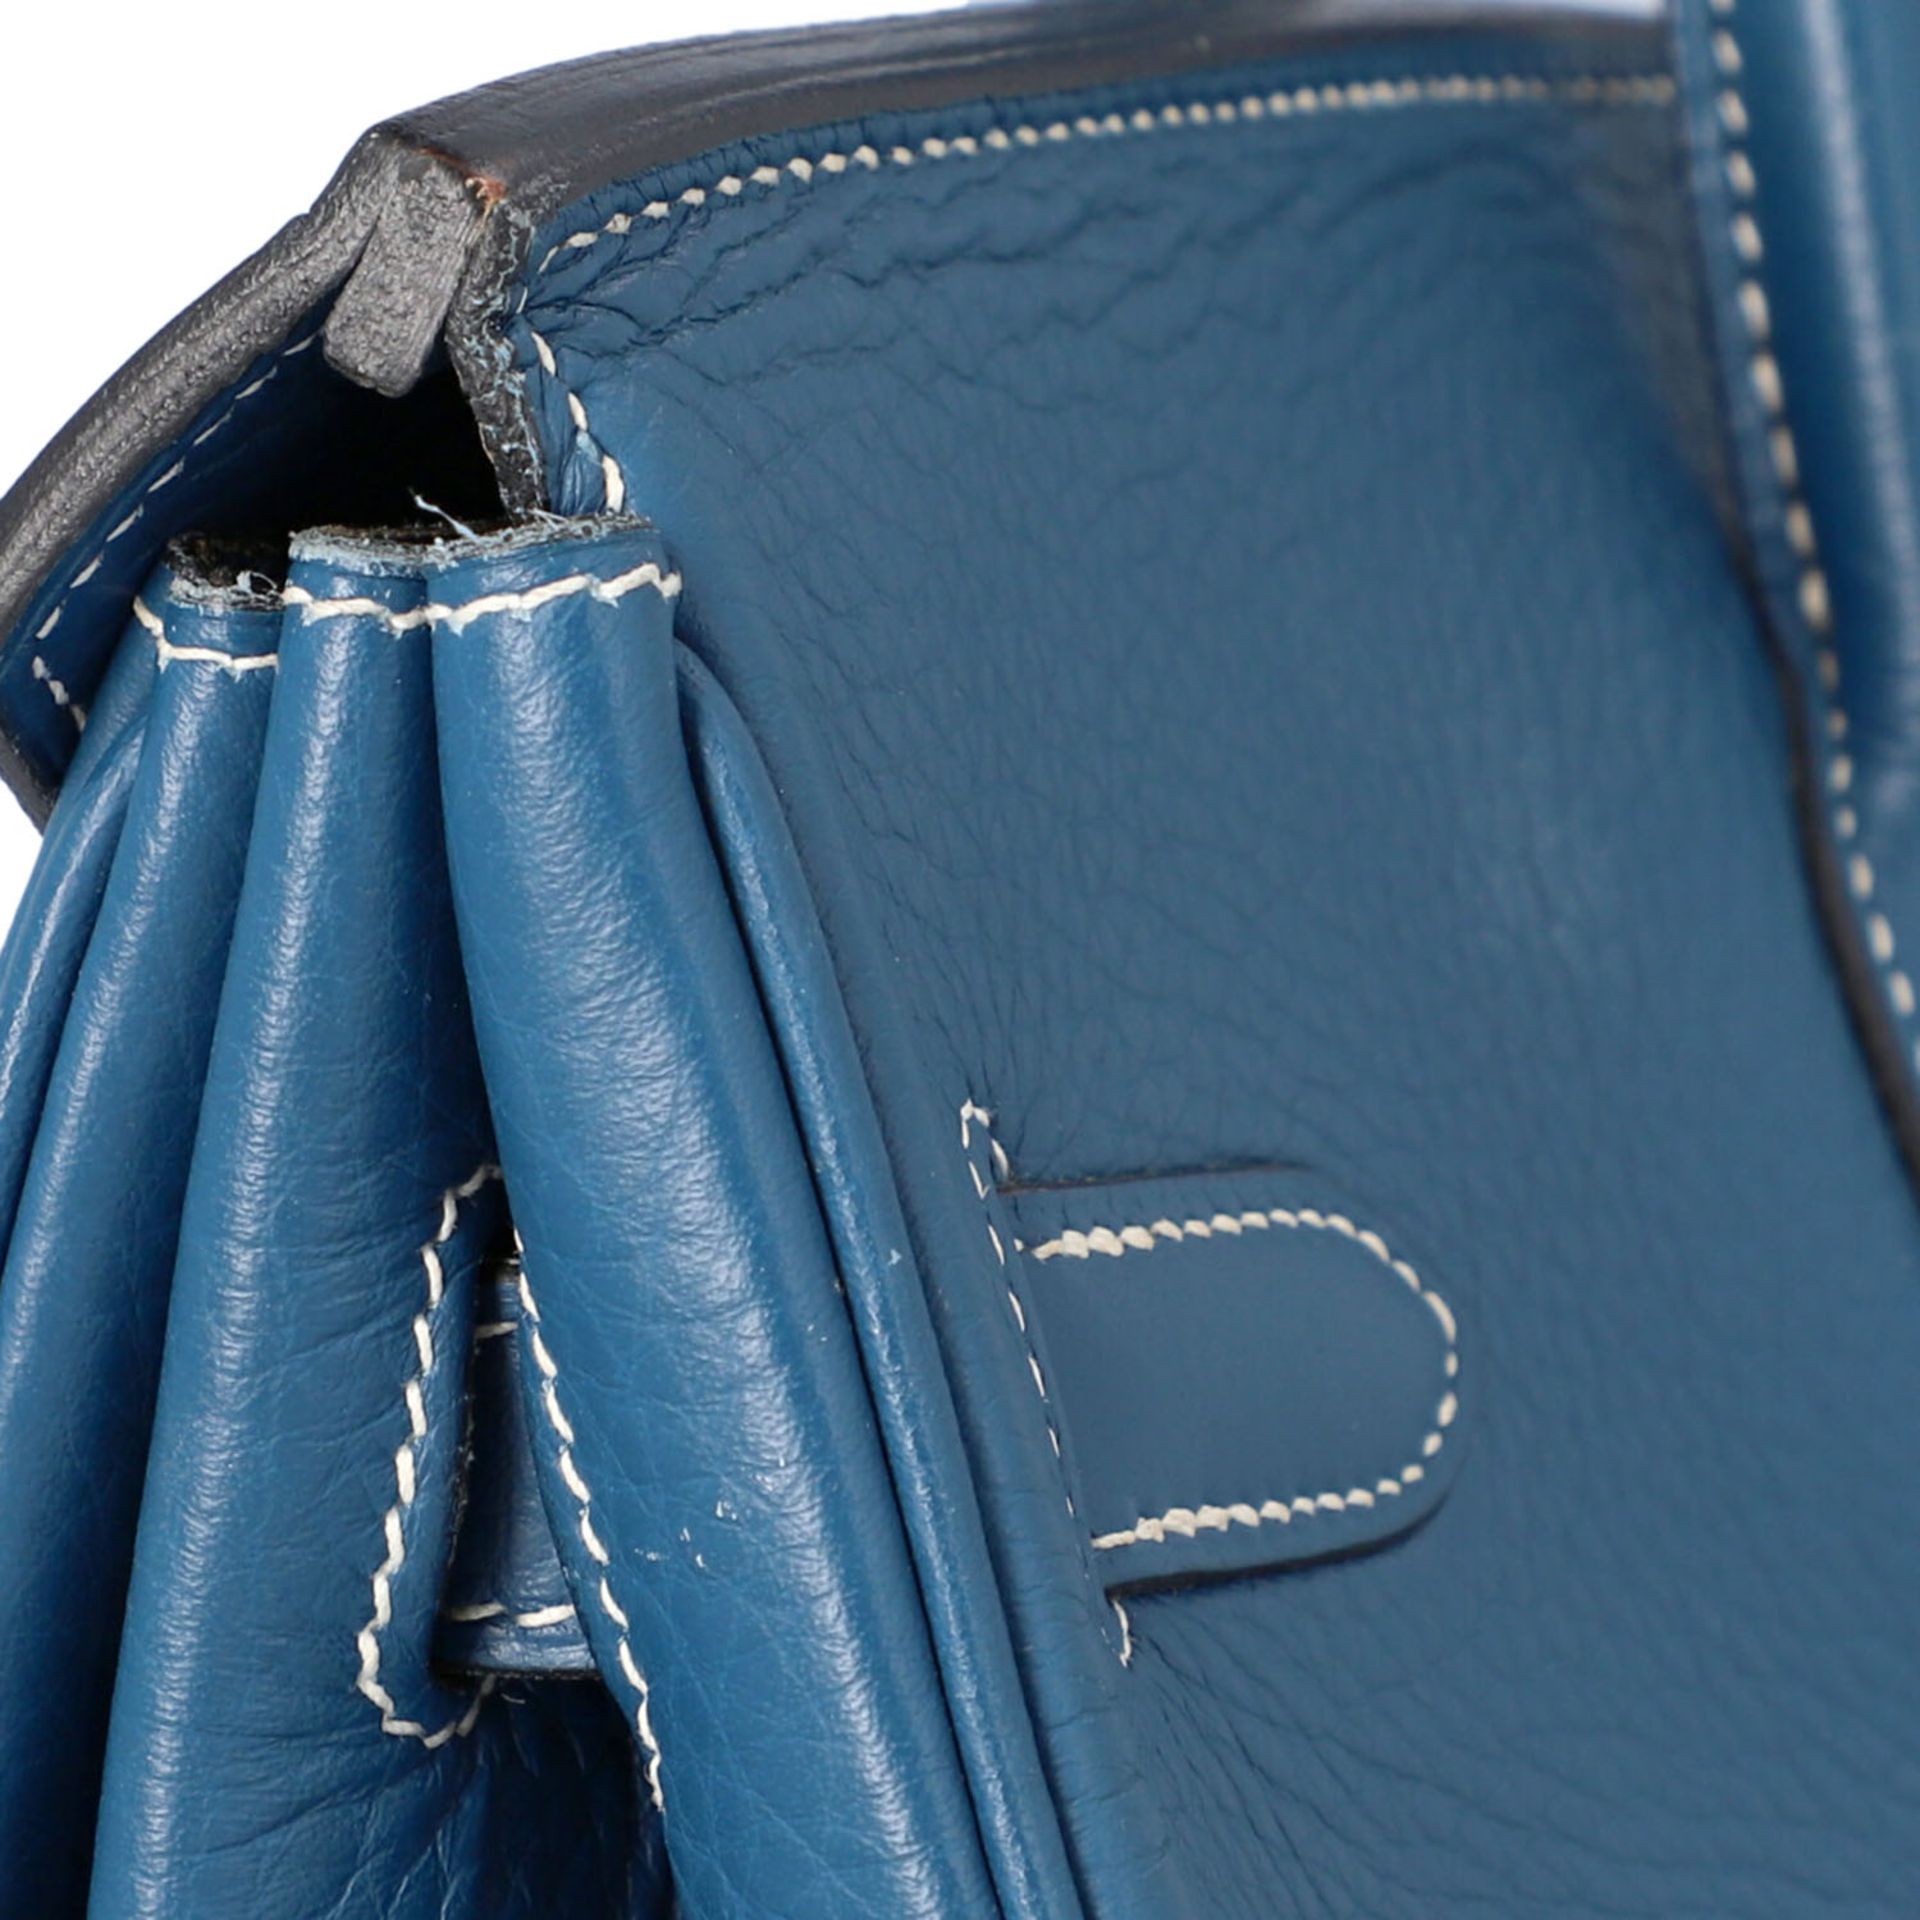 HERMÈS Handtasche "BIRKIN BAG 35", Koll. 2003.Akt. NP. ca.: 8.500,-€. Togo-Leder in Blau, Hardware - Bild 6 aus 9